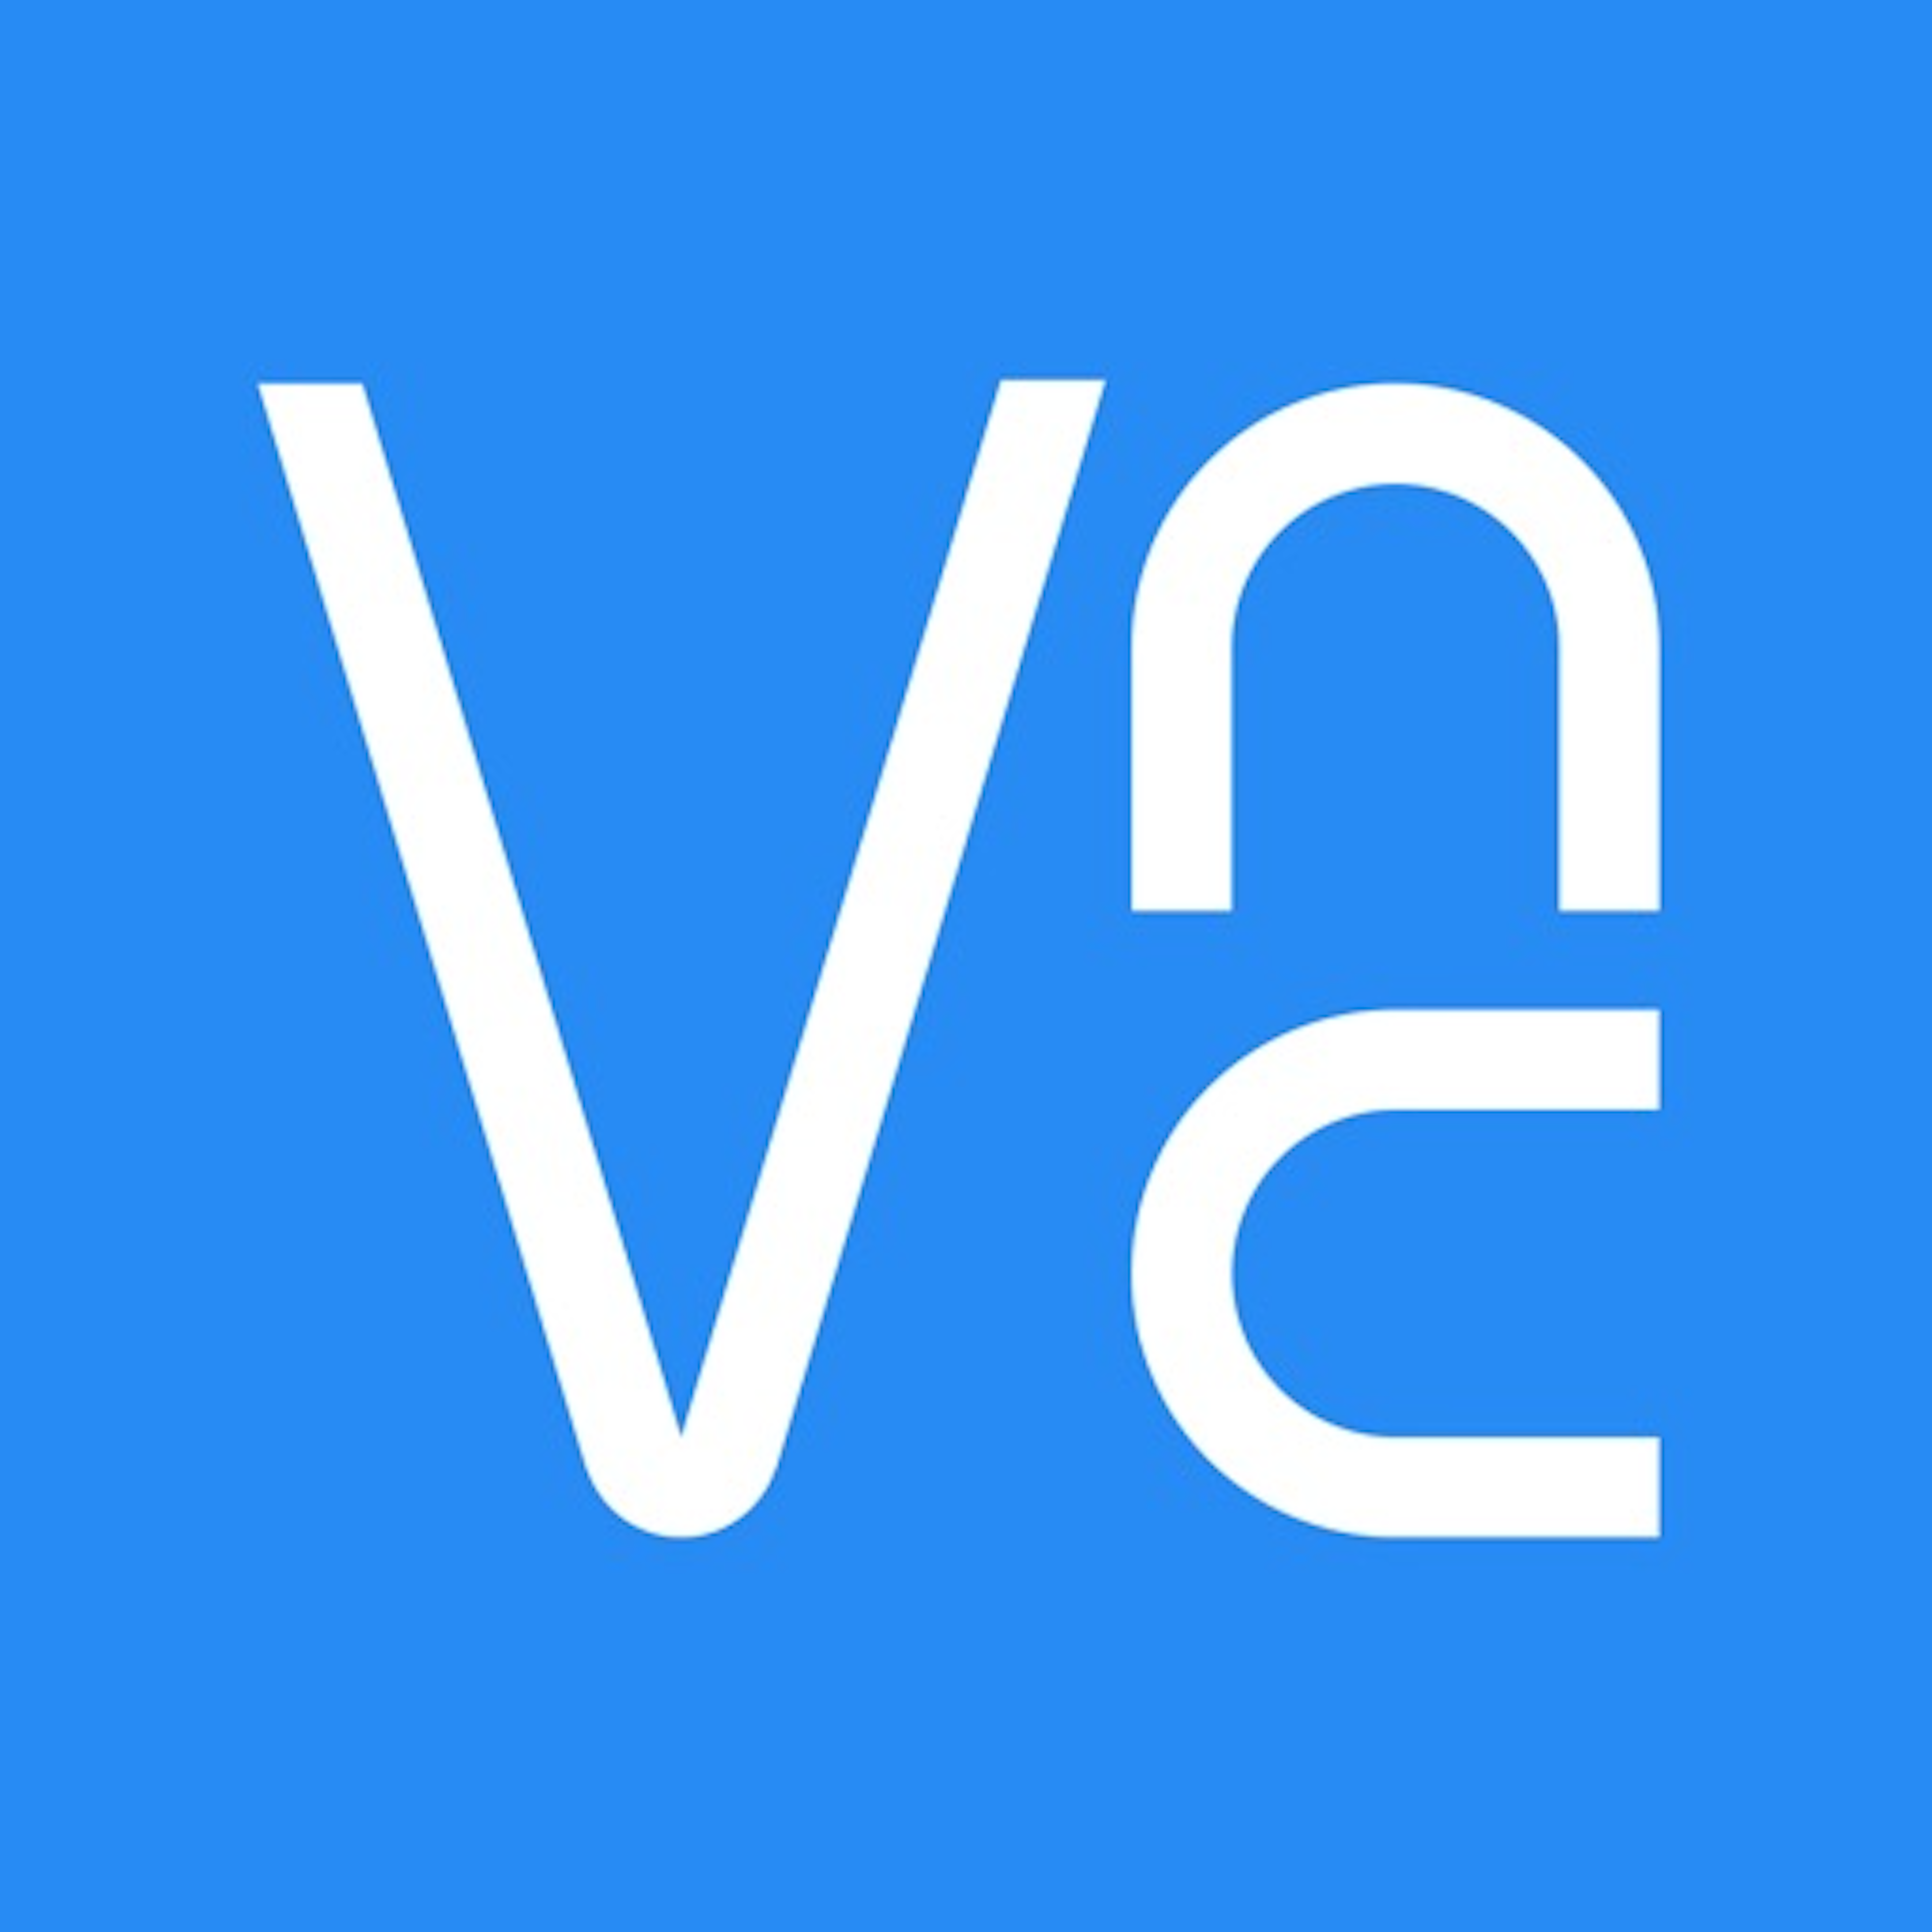 vnc client download